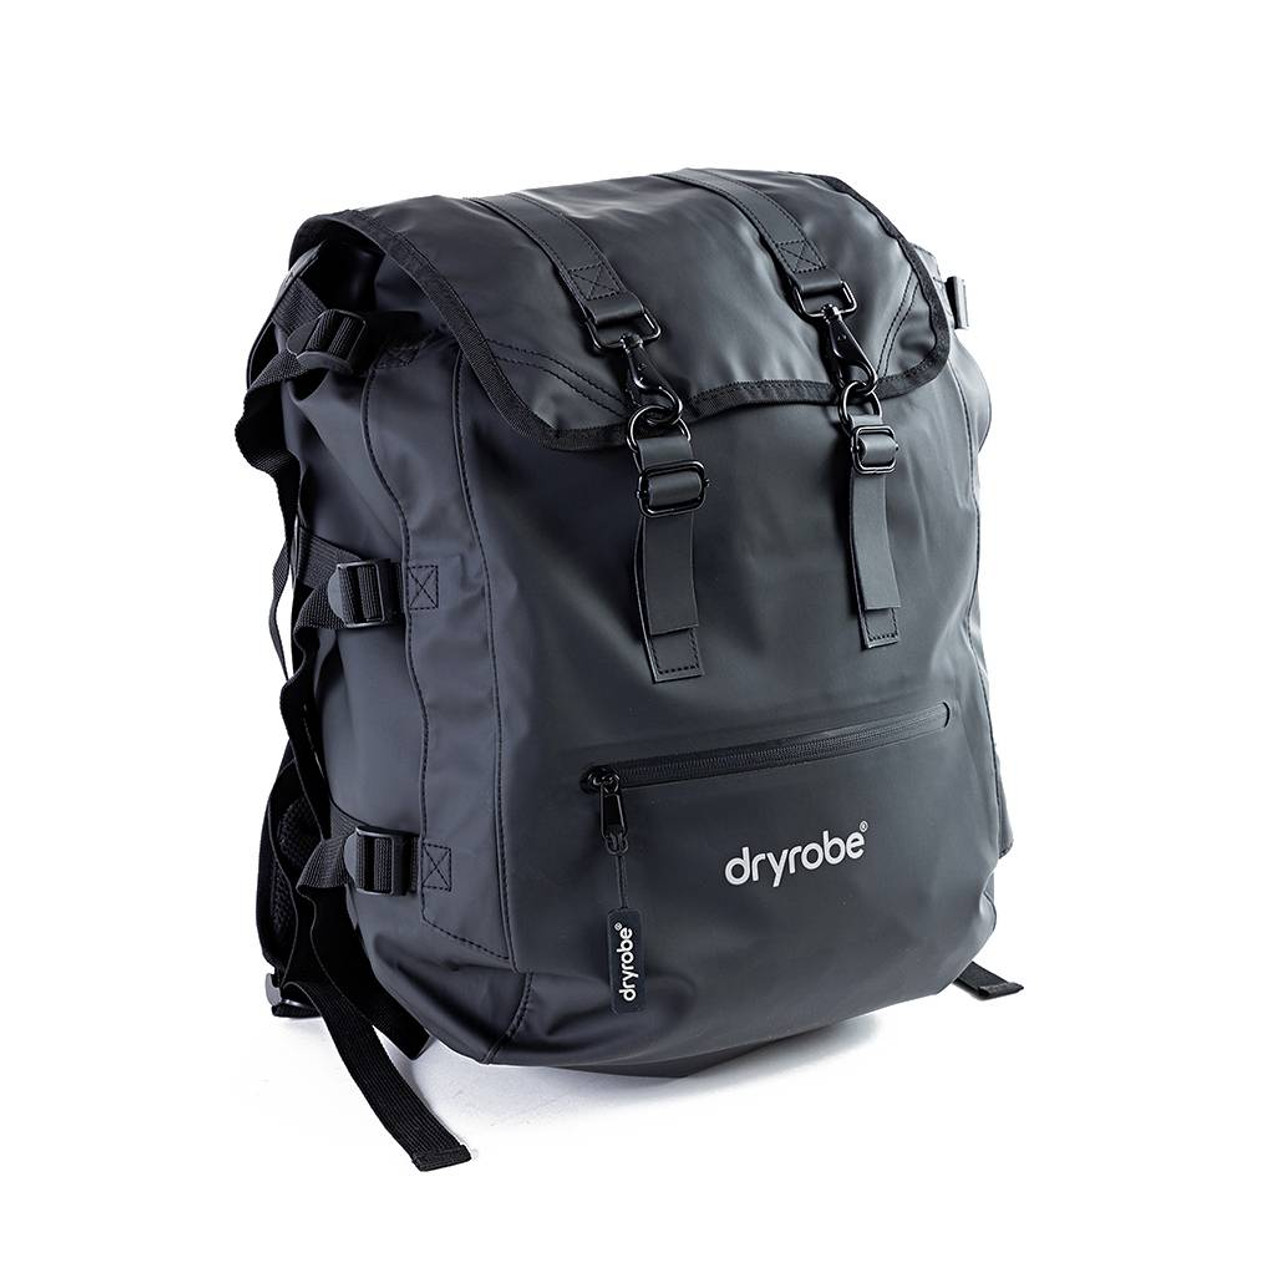 Image of Dryrobe Compression Backpack